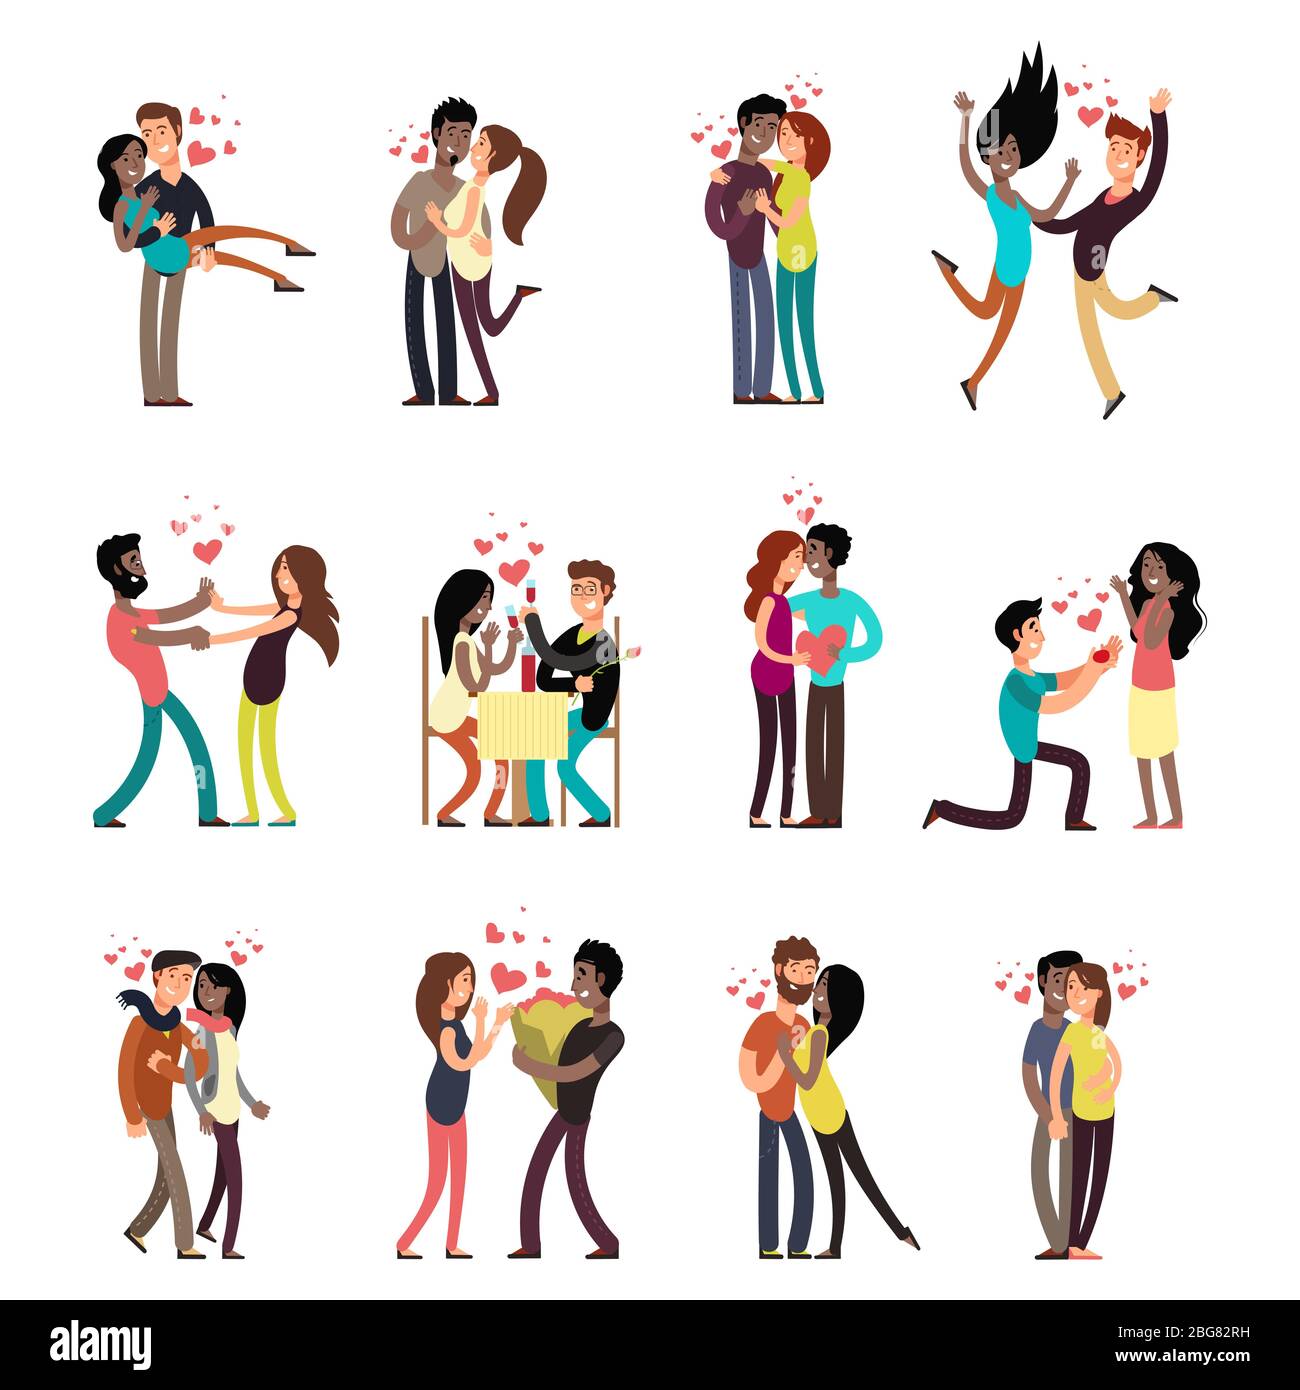 Interracial couples cartoon